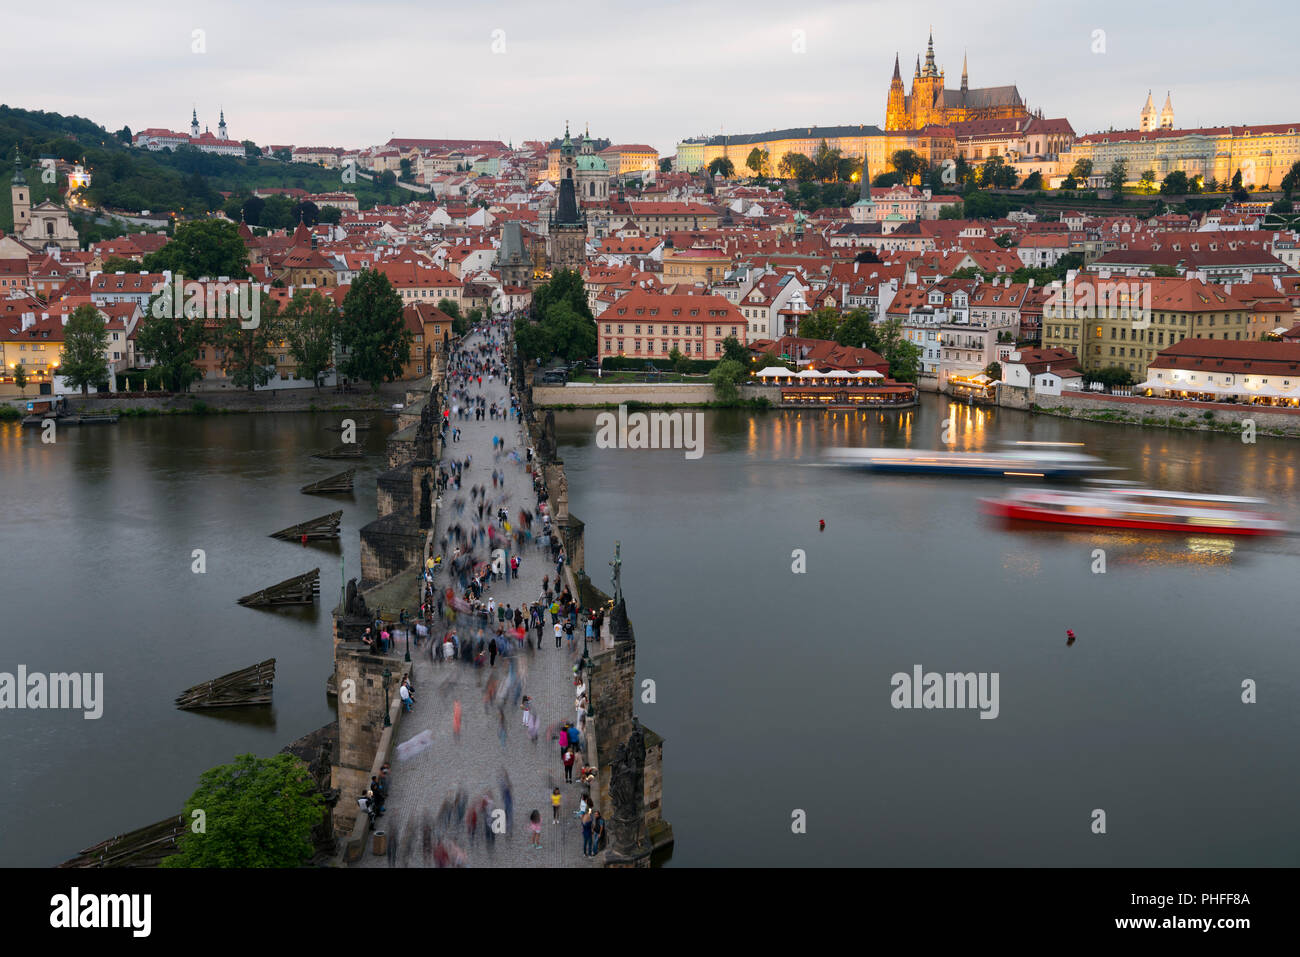 Le Pont Charles et le château de Prague (Hradcany) avec la cathédrale Saint-Guy et l'église Saint Georges, Prague, République tchèque. Banque D'Images